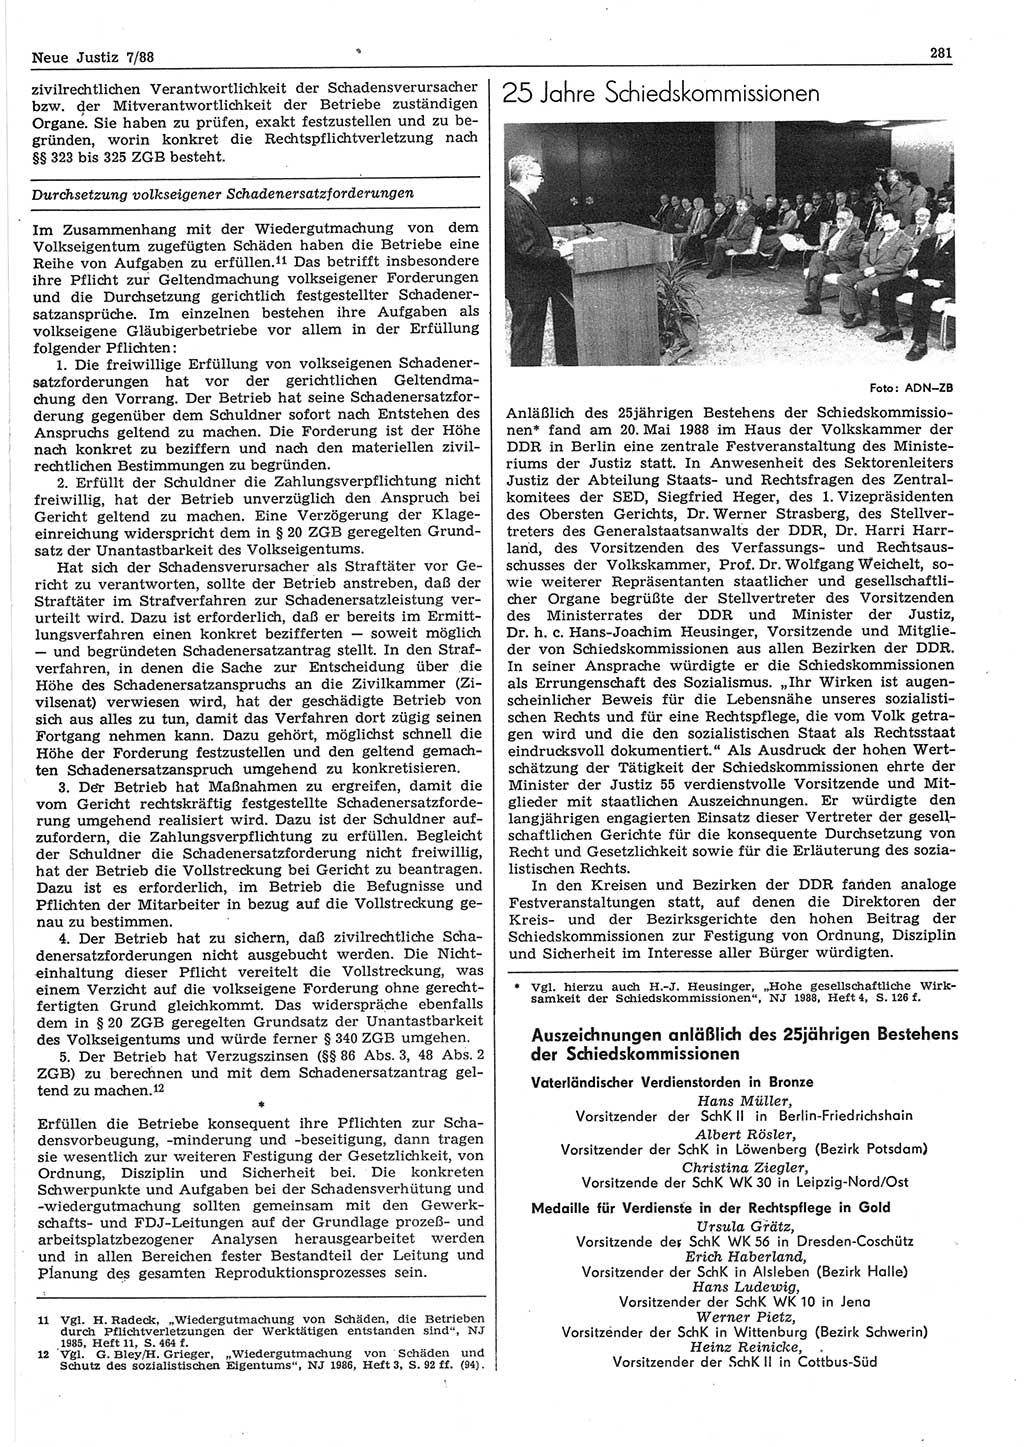 Neue Justiz (NJ), Zeitschrift für sozialistisches Recht und Gesetzlichkeit [Deutsche Demokratische Republik (DDR)], 42. Jahrgang 1988, Seite 281 (NJ DDR 1988, S. 281)